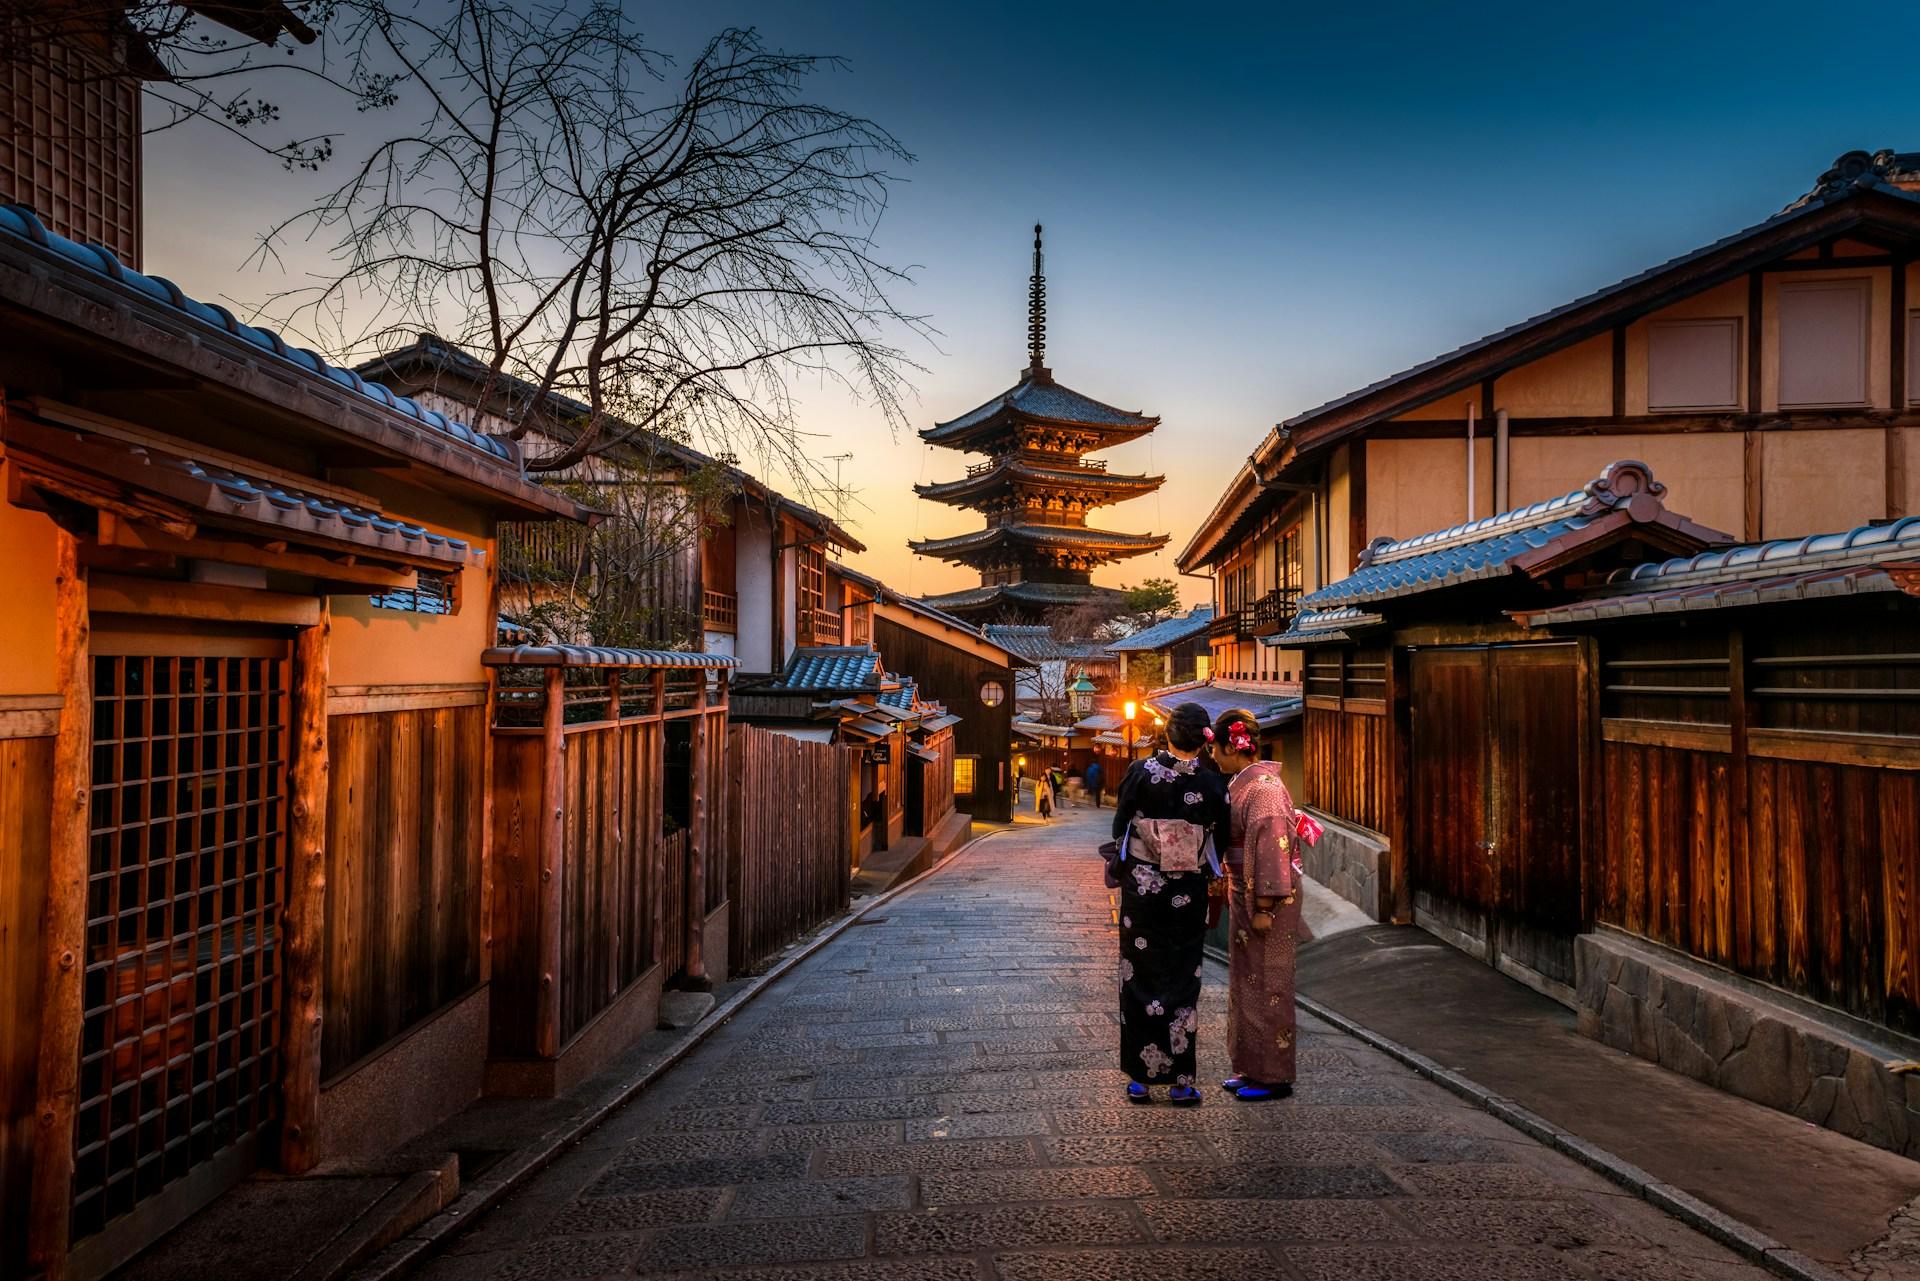 Cinq joyaux cachés à découvrir à Kyoto